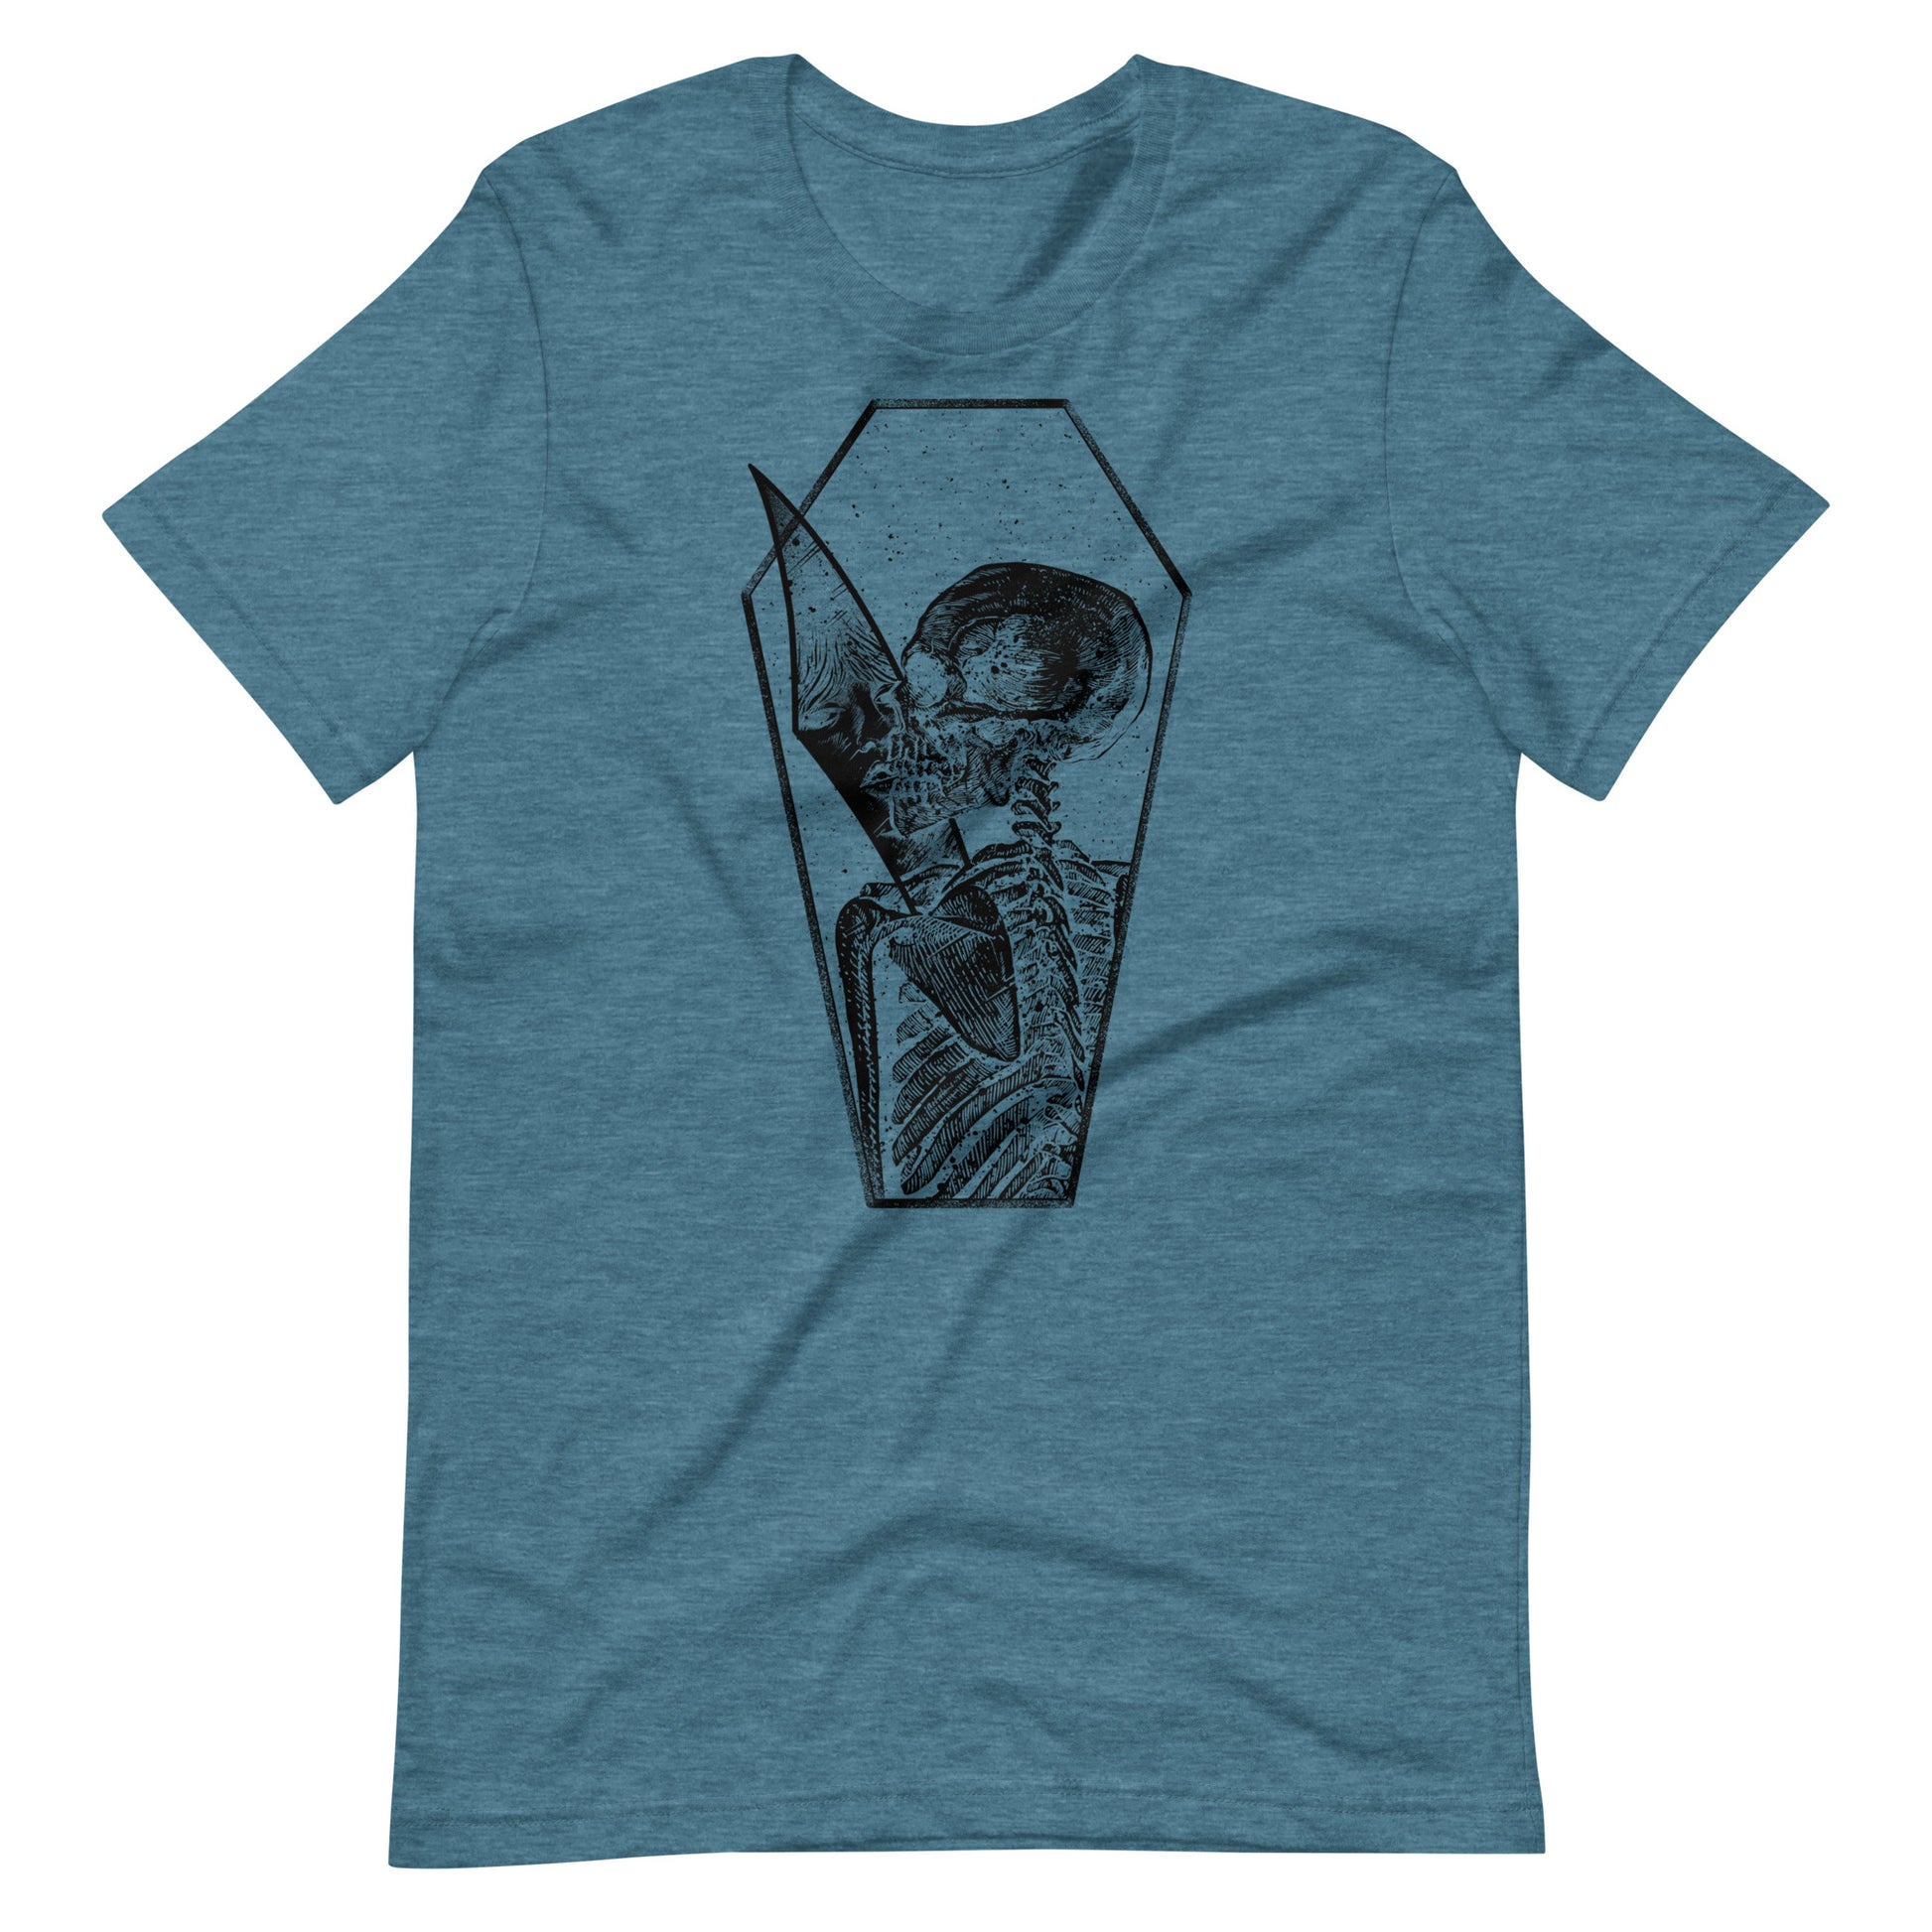 Shadow of Memories Black - Men's t-shirt - Heather Deep Teal Front